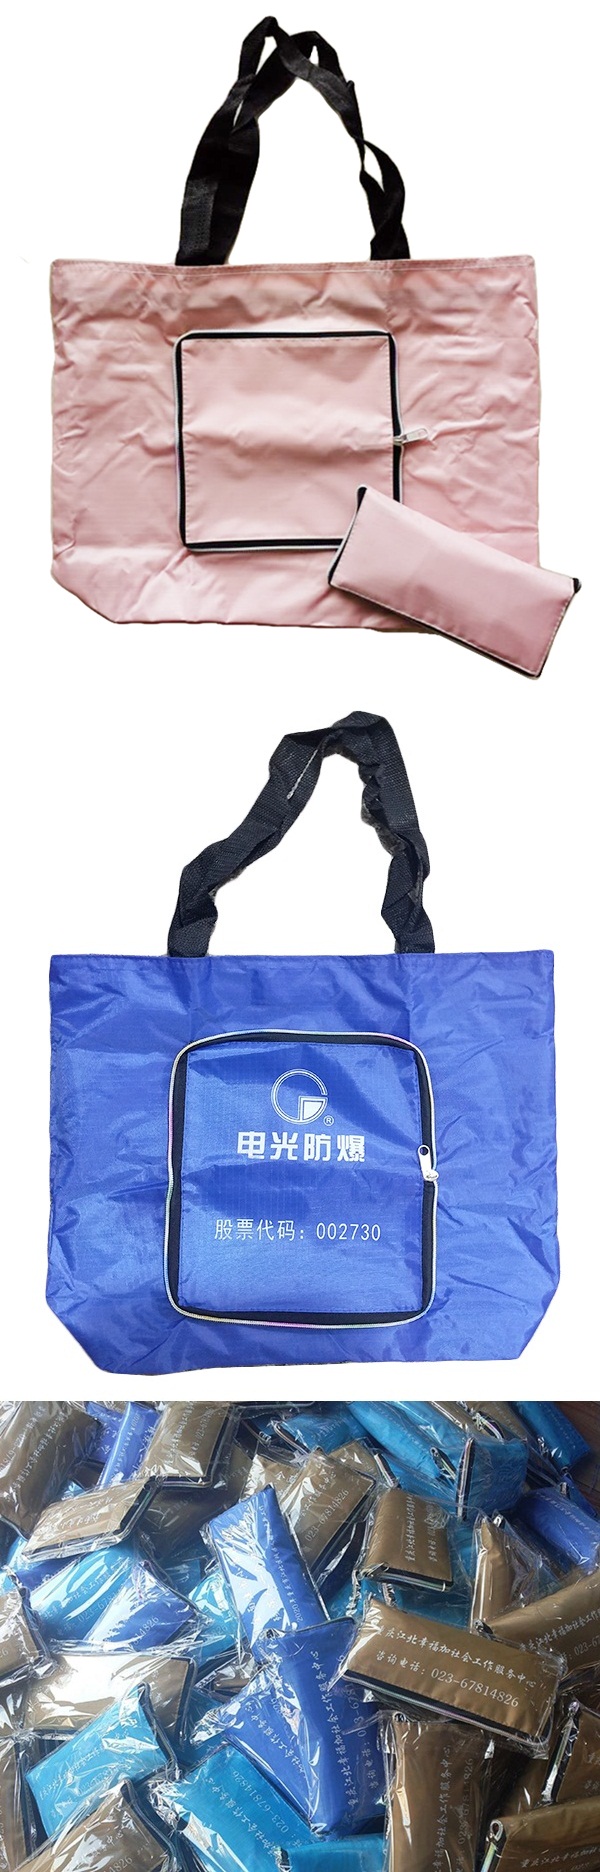 純色拉鍊折疊購物袋  商品貨號: ZC63880004